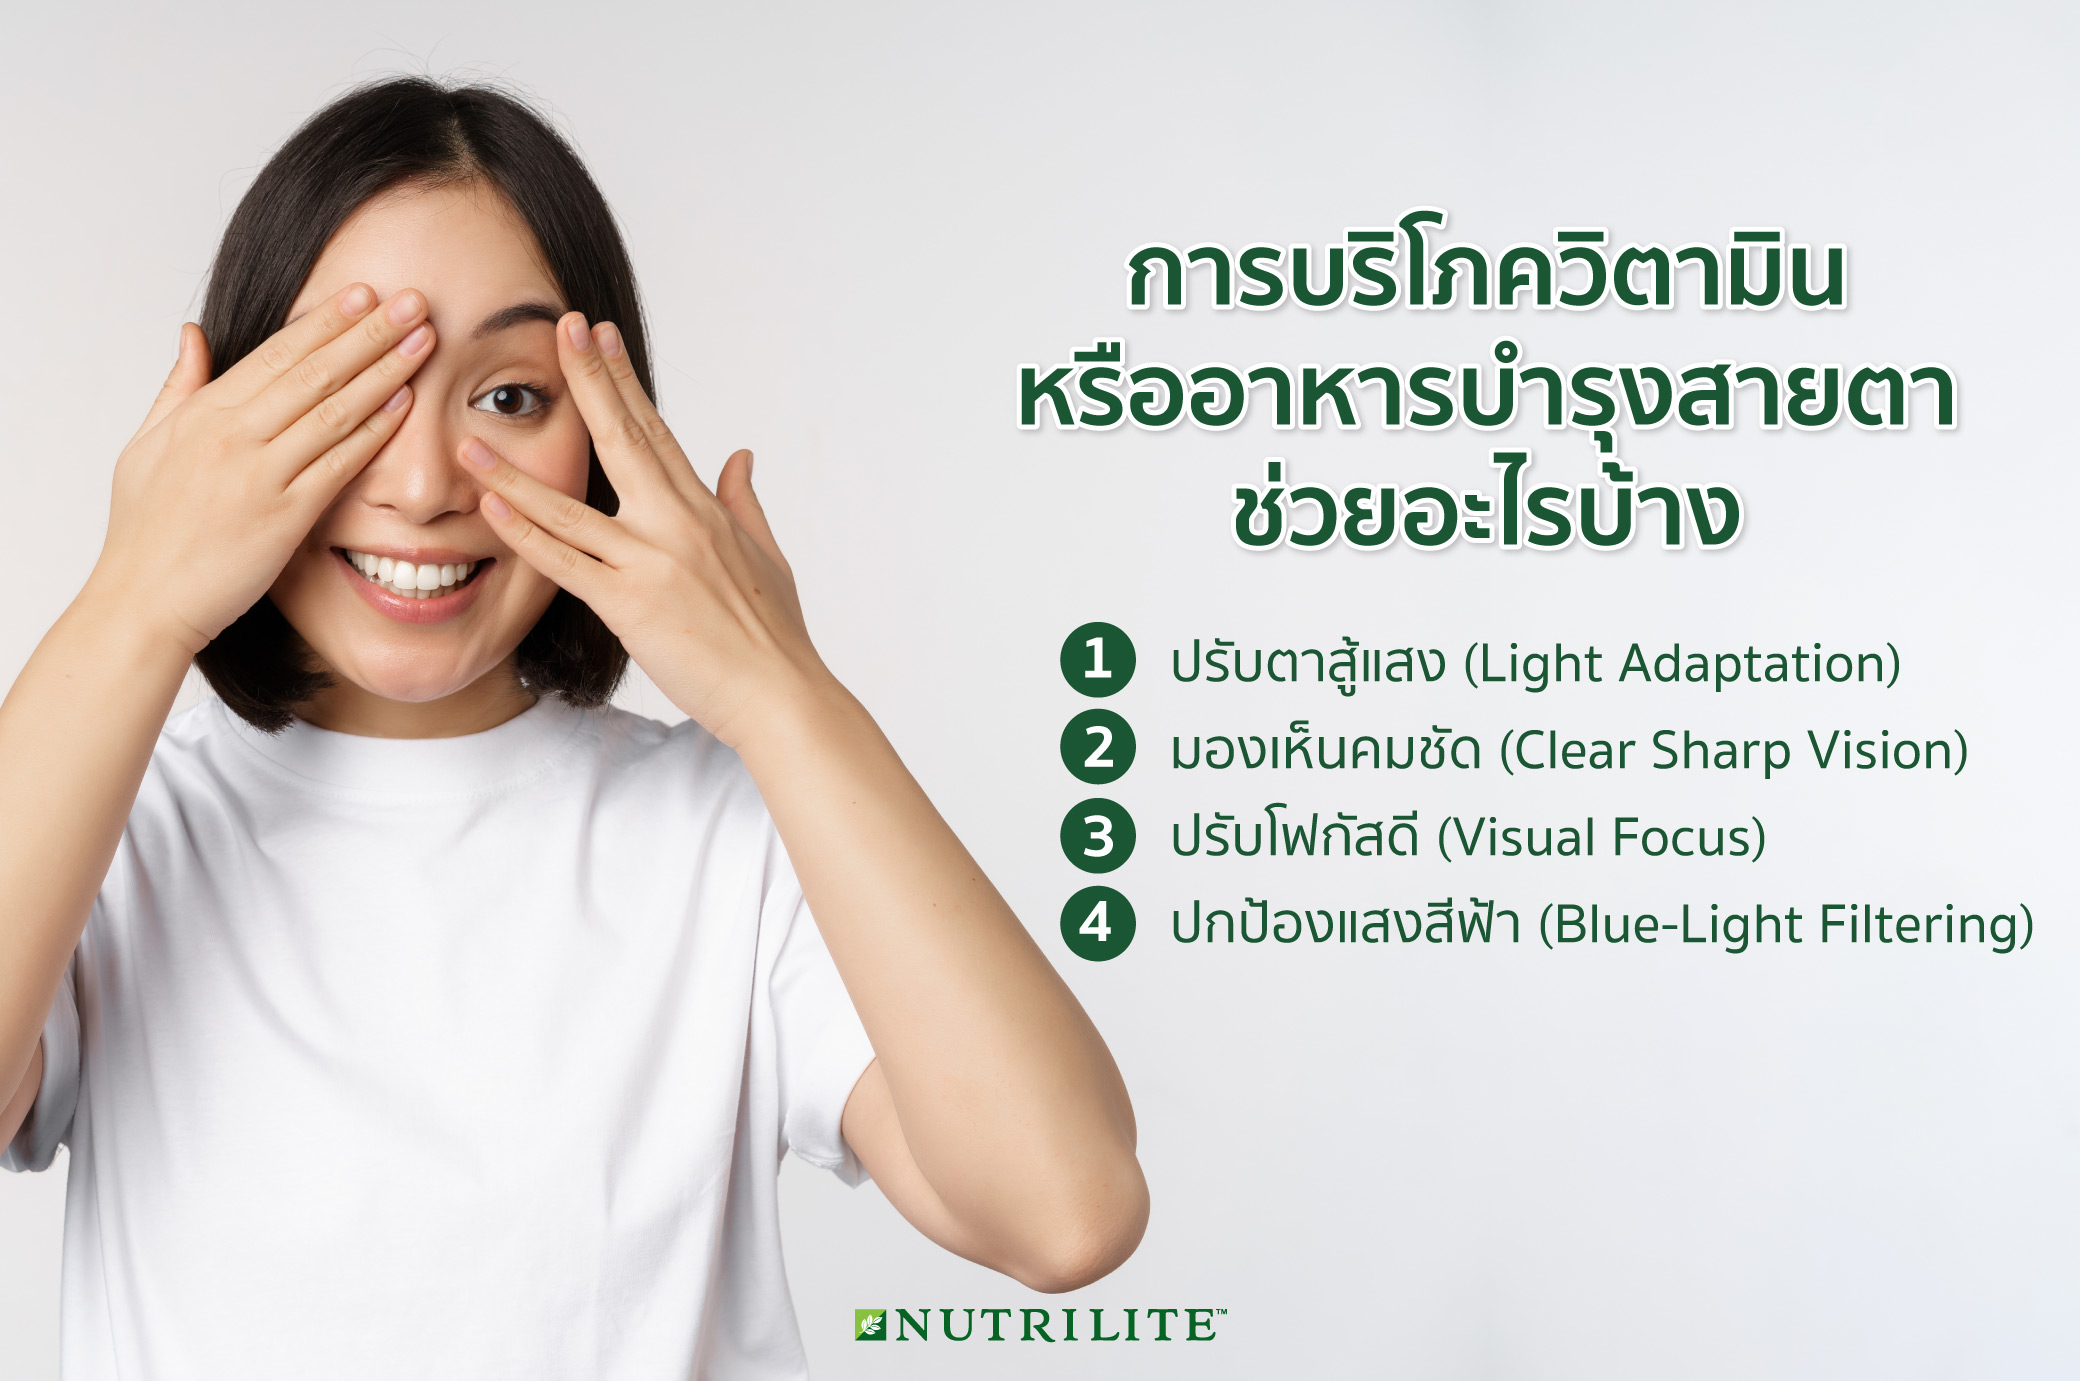 แนะนำสารอาหารและวิตามินบำรุงสายตา แก้ตาล้า เสริมสร้างมองเห็น | Nutrilite™  Thailand